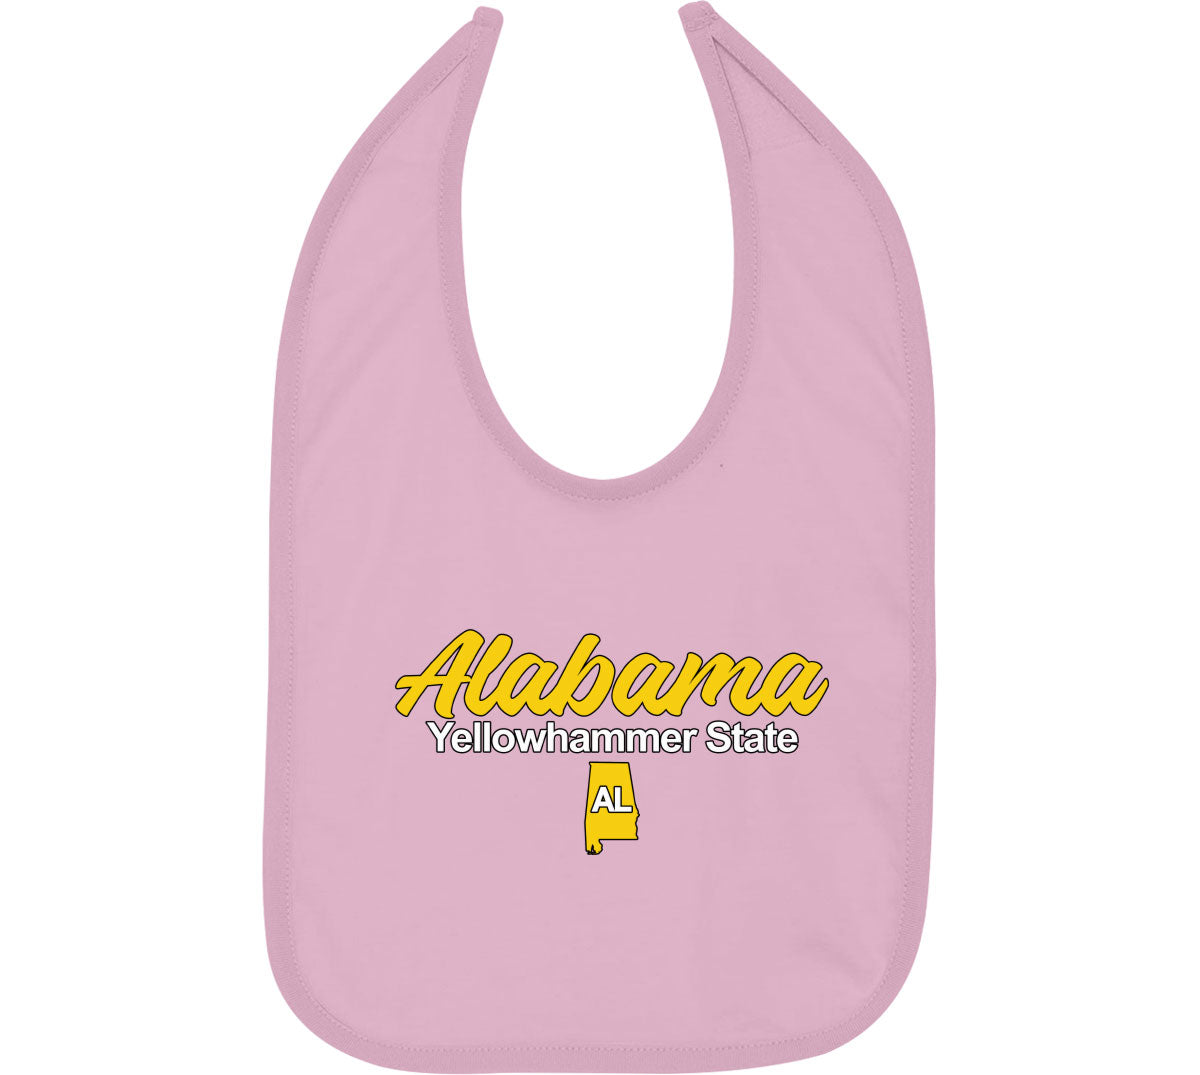 Alabama Yellowhammer State Baby Bib